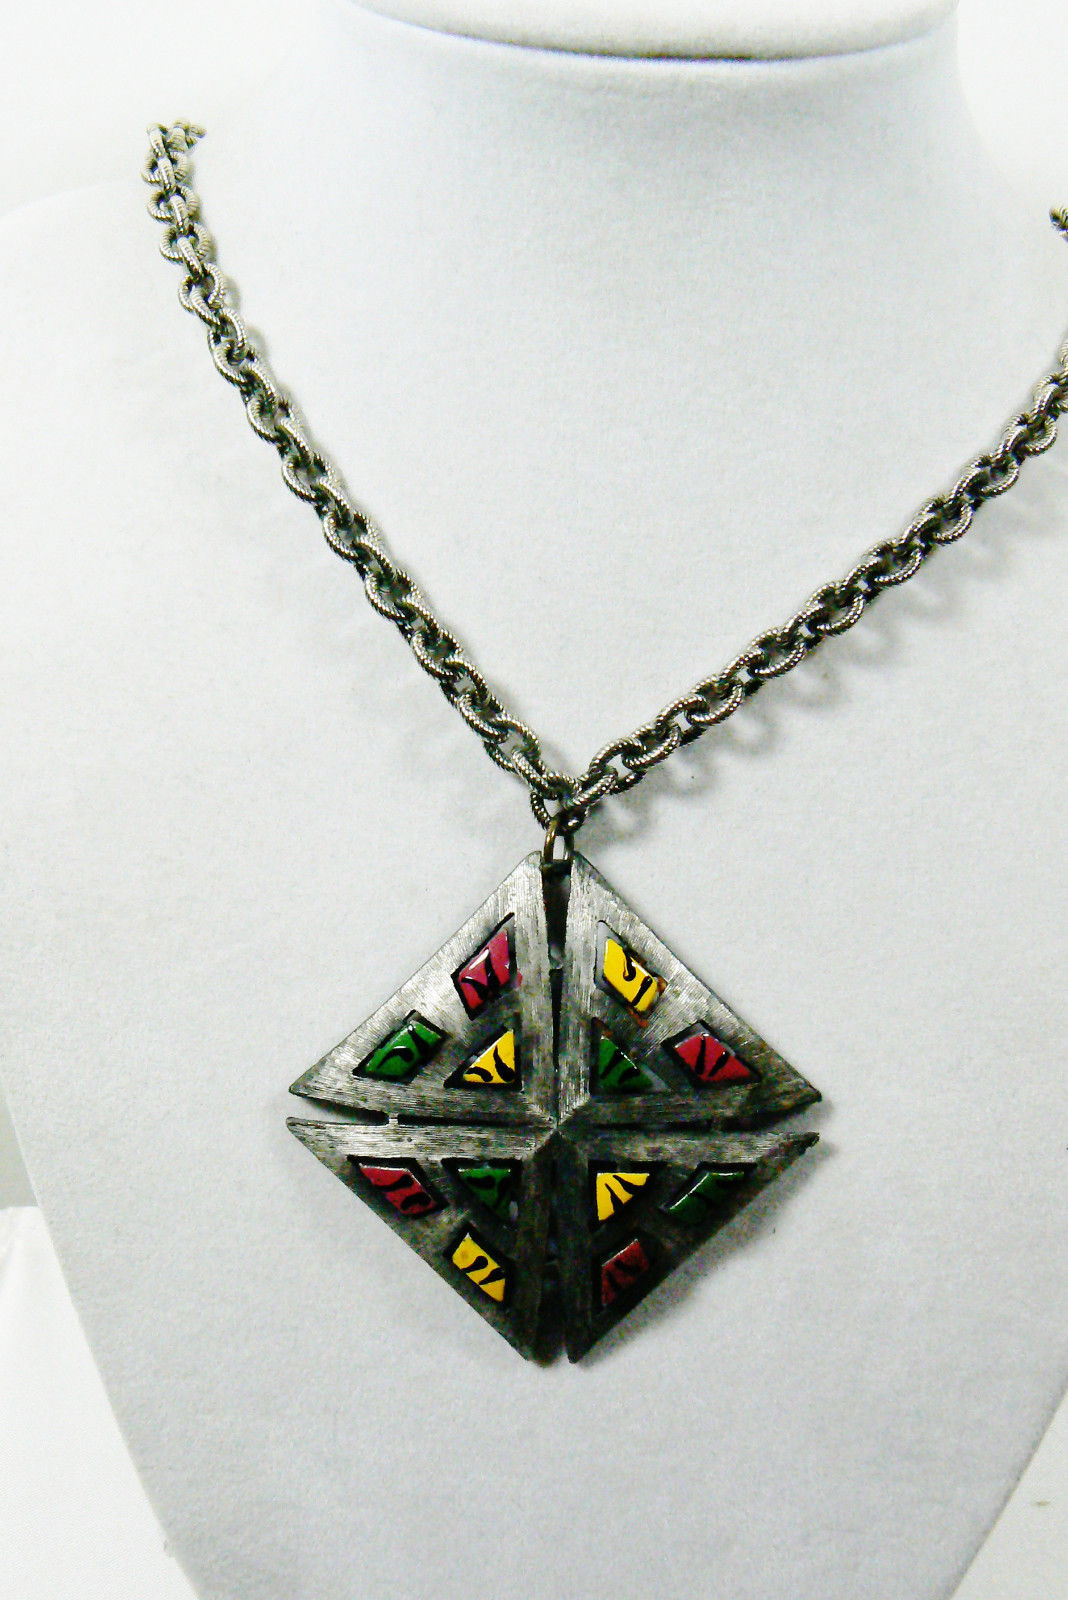 Vintage Pewter metal Enamel Color pendant chain necklace 22"L